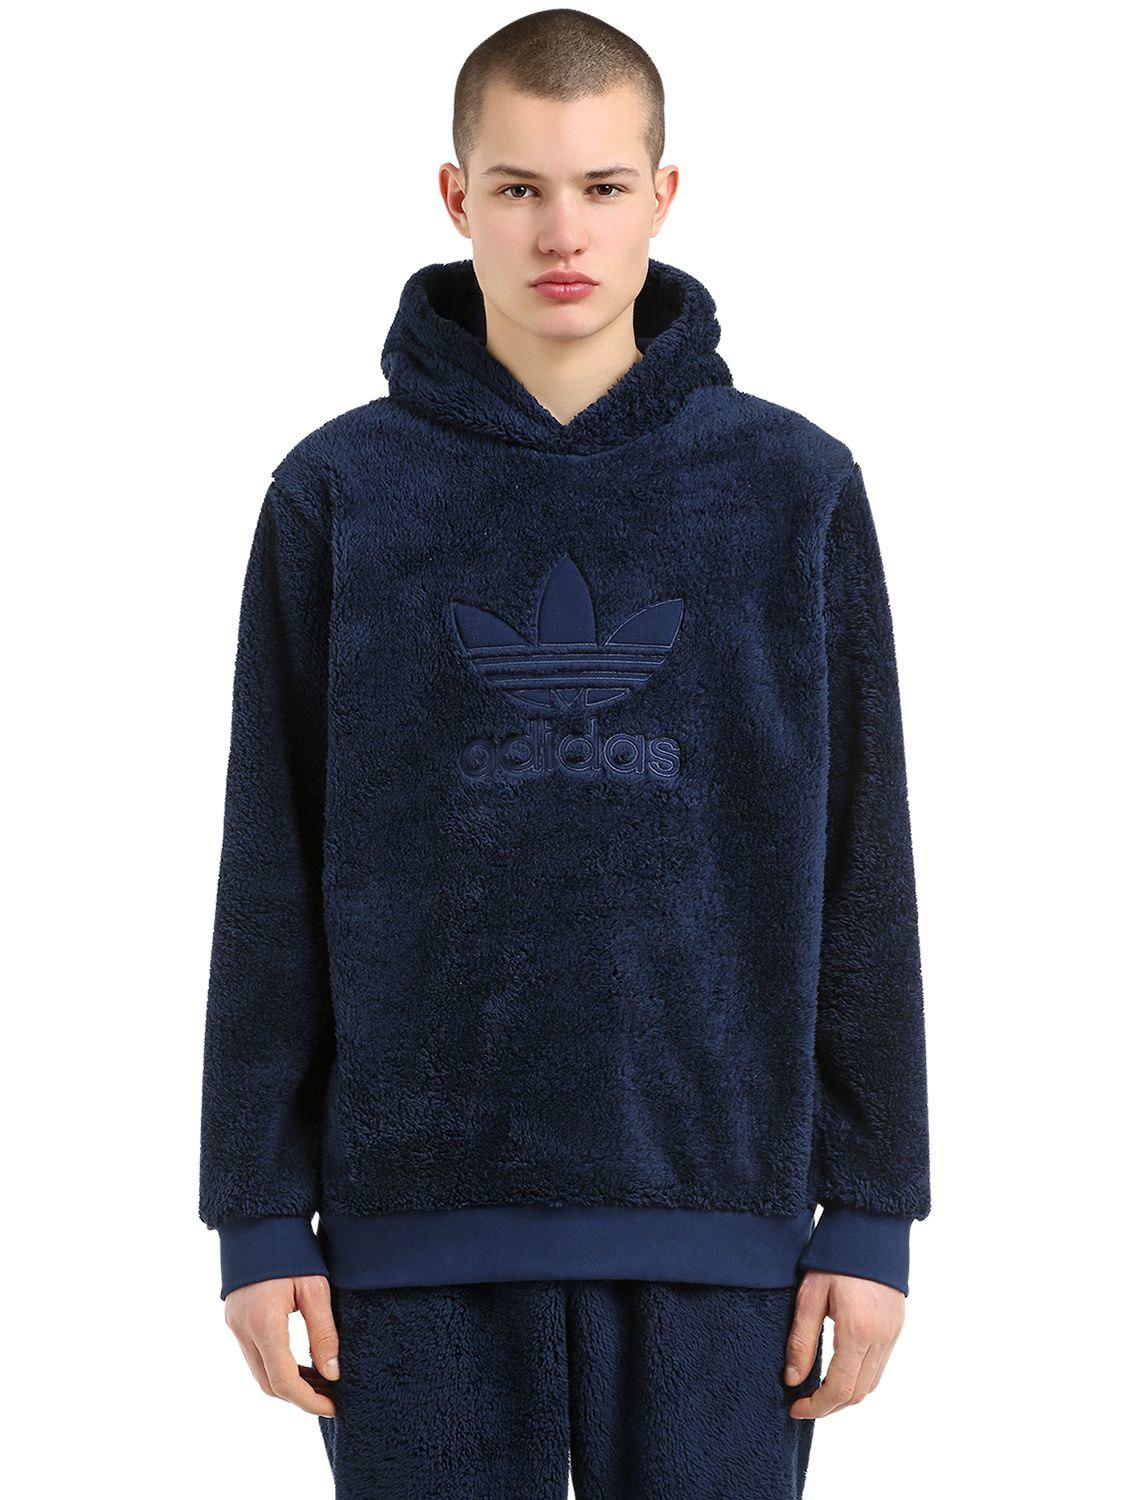 adidas winterised pullover hoodie